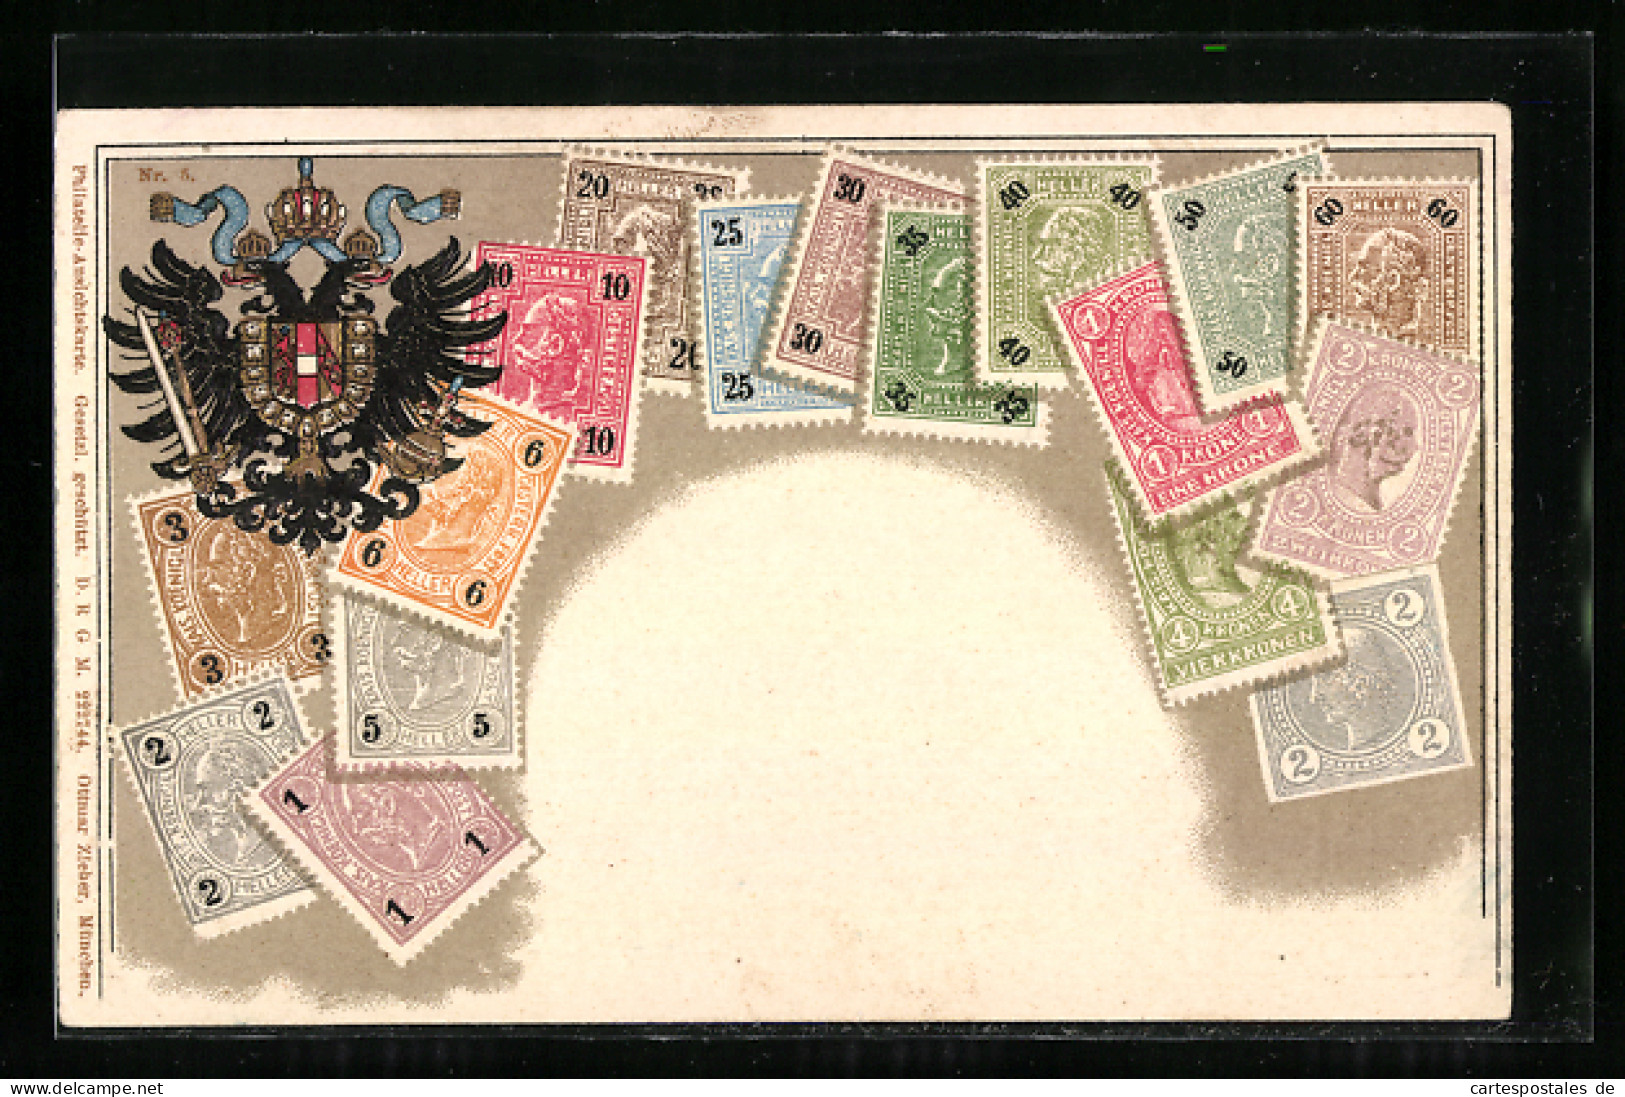 Präge-AK Österreich, Briefmarken Und Doppeladler  - Stamps (pictures)